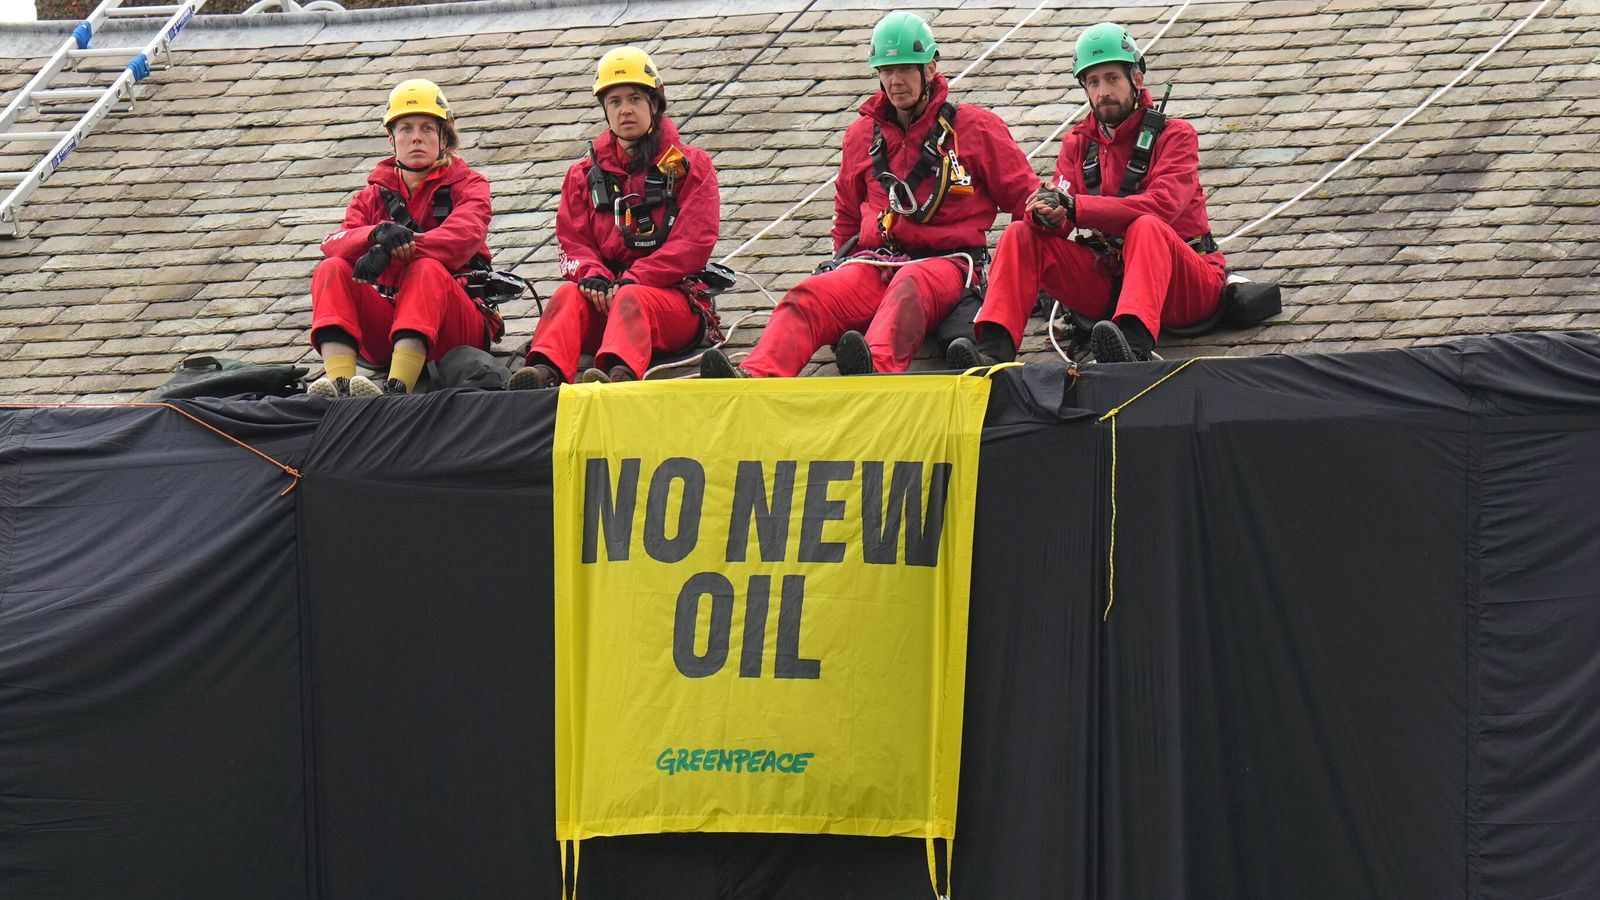 Protest Greenpeace v Sunakovom dome: Aktivisti prepustení na kauciu